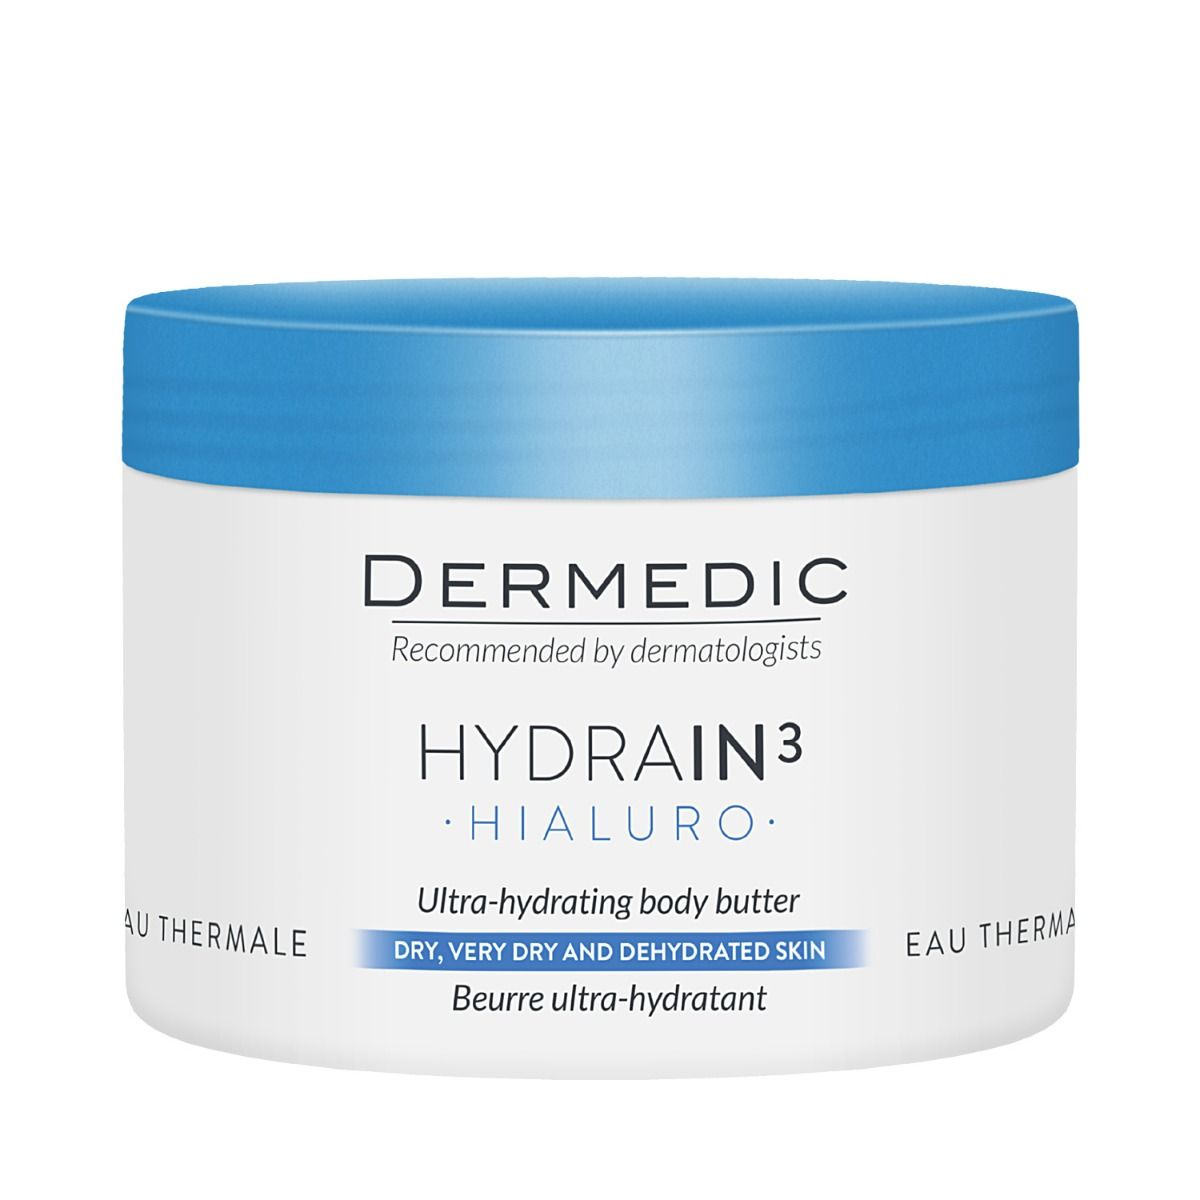 Dermedic Hydrain3 Hialuro масло для тела, 225 ml dermedic hydrain3 hialuro night cream